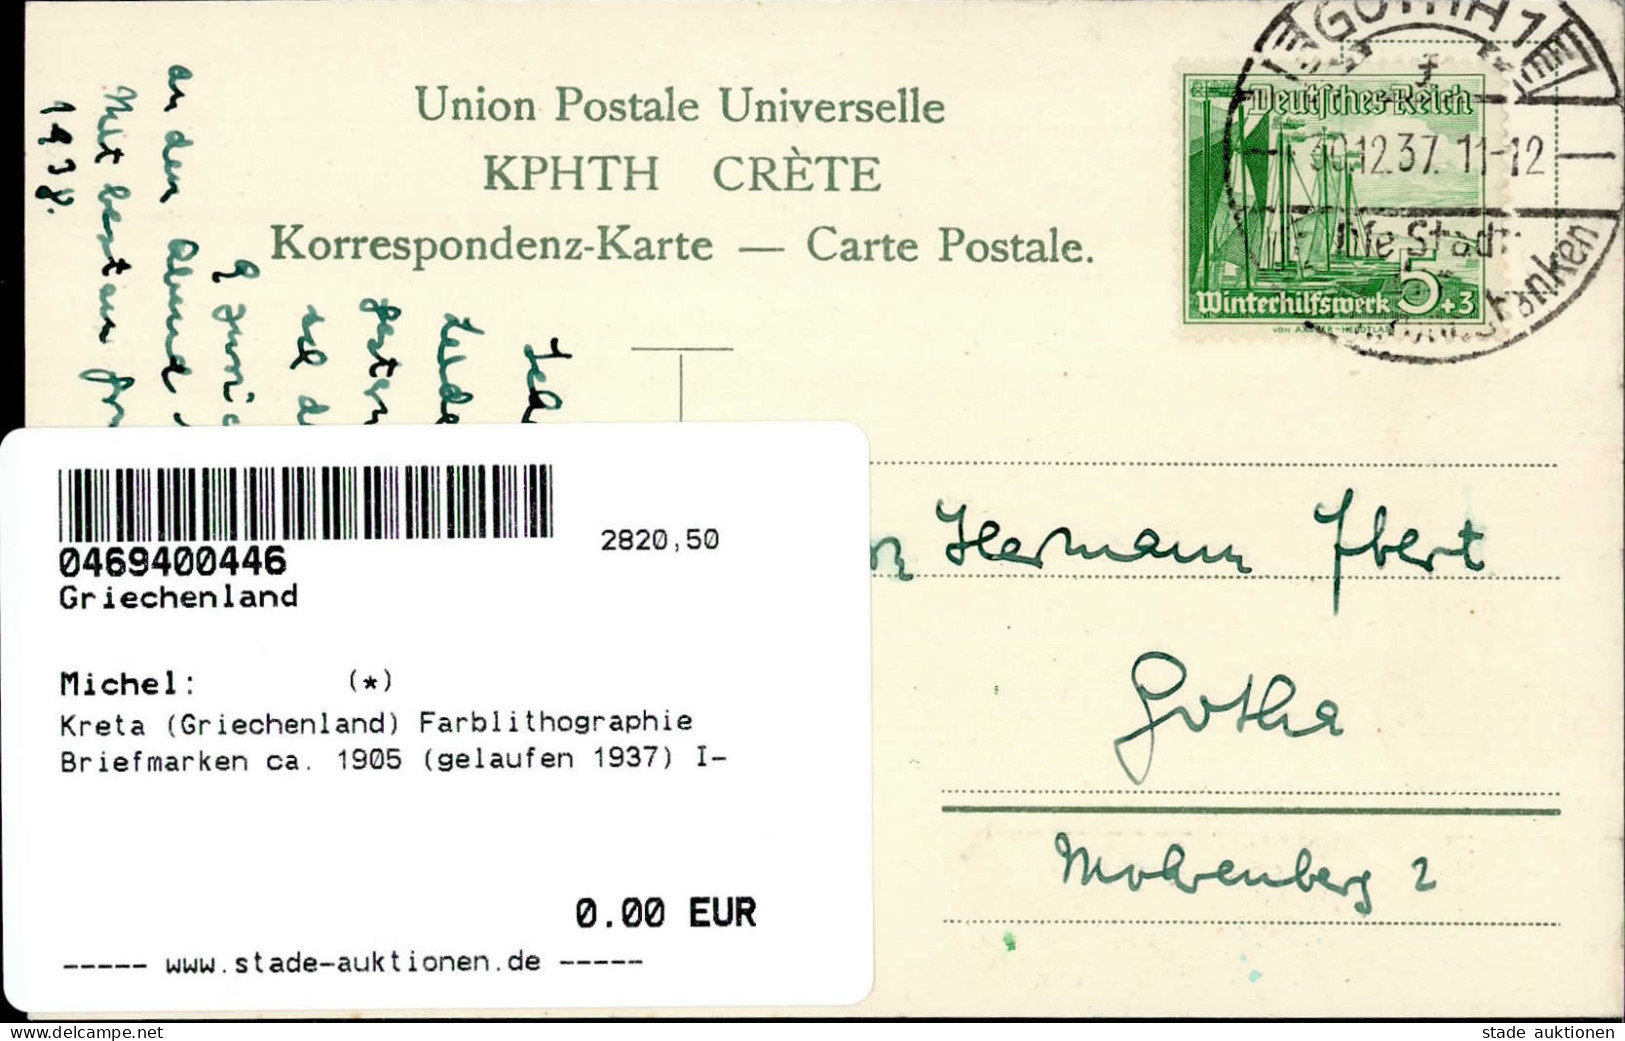 Kreta (Griechenland) Farblithographie Briefmarken Ca. 1905 (gelaufen 1937) I- - Grecia